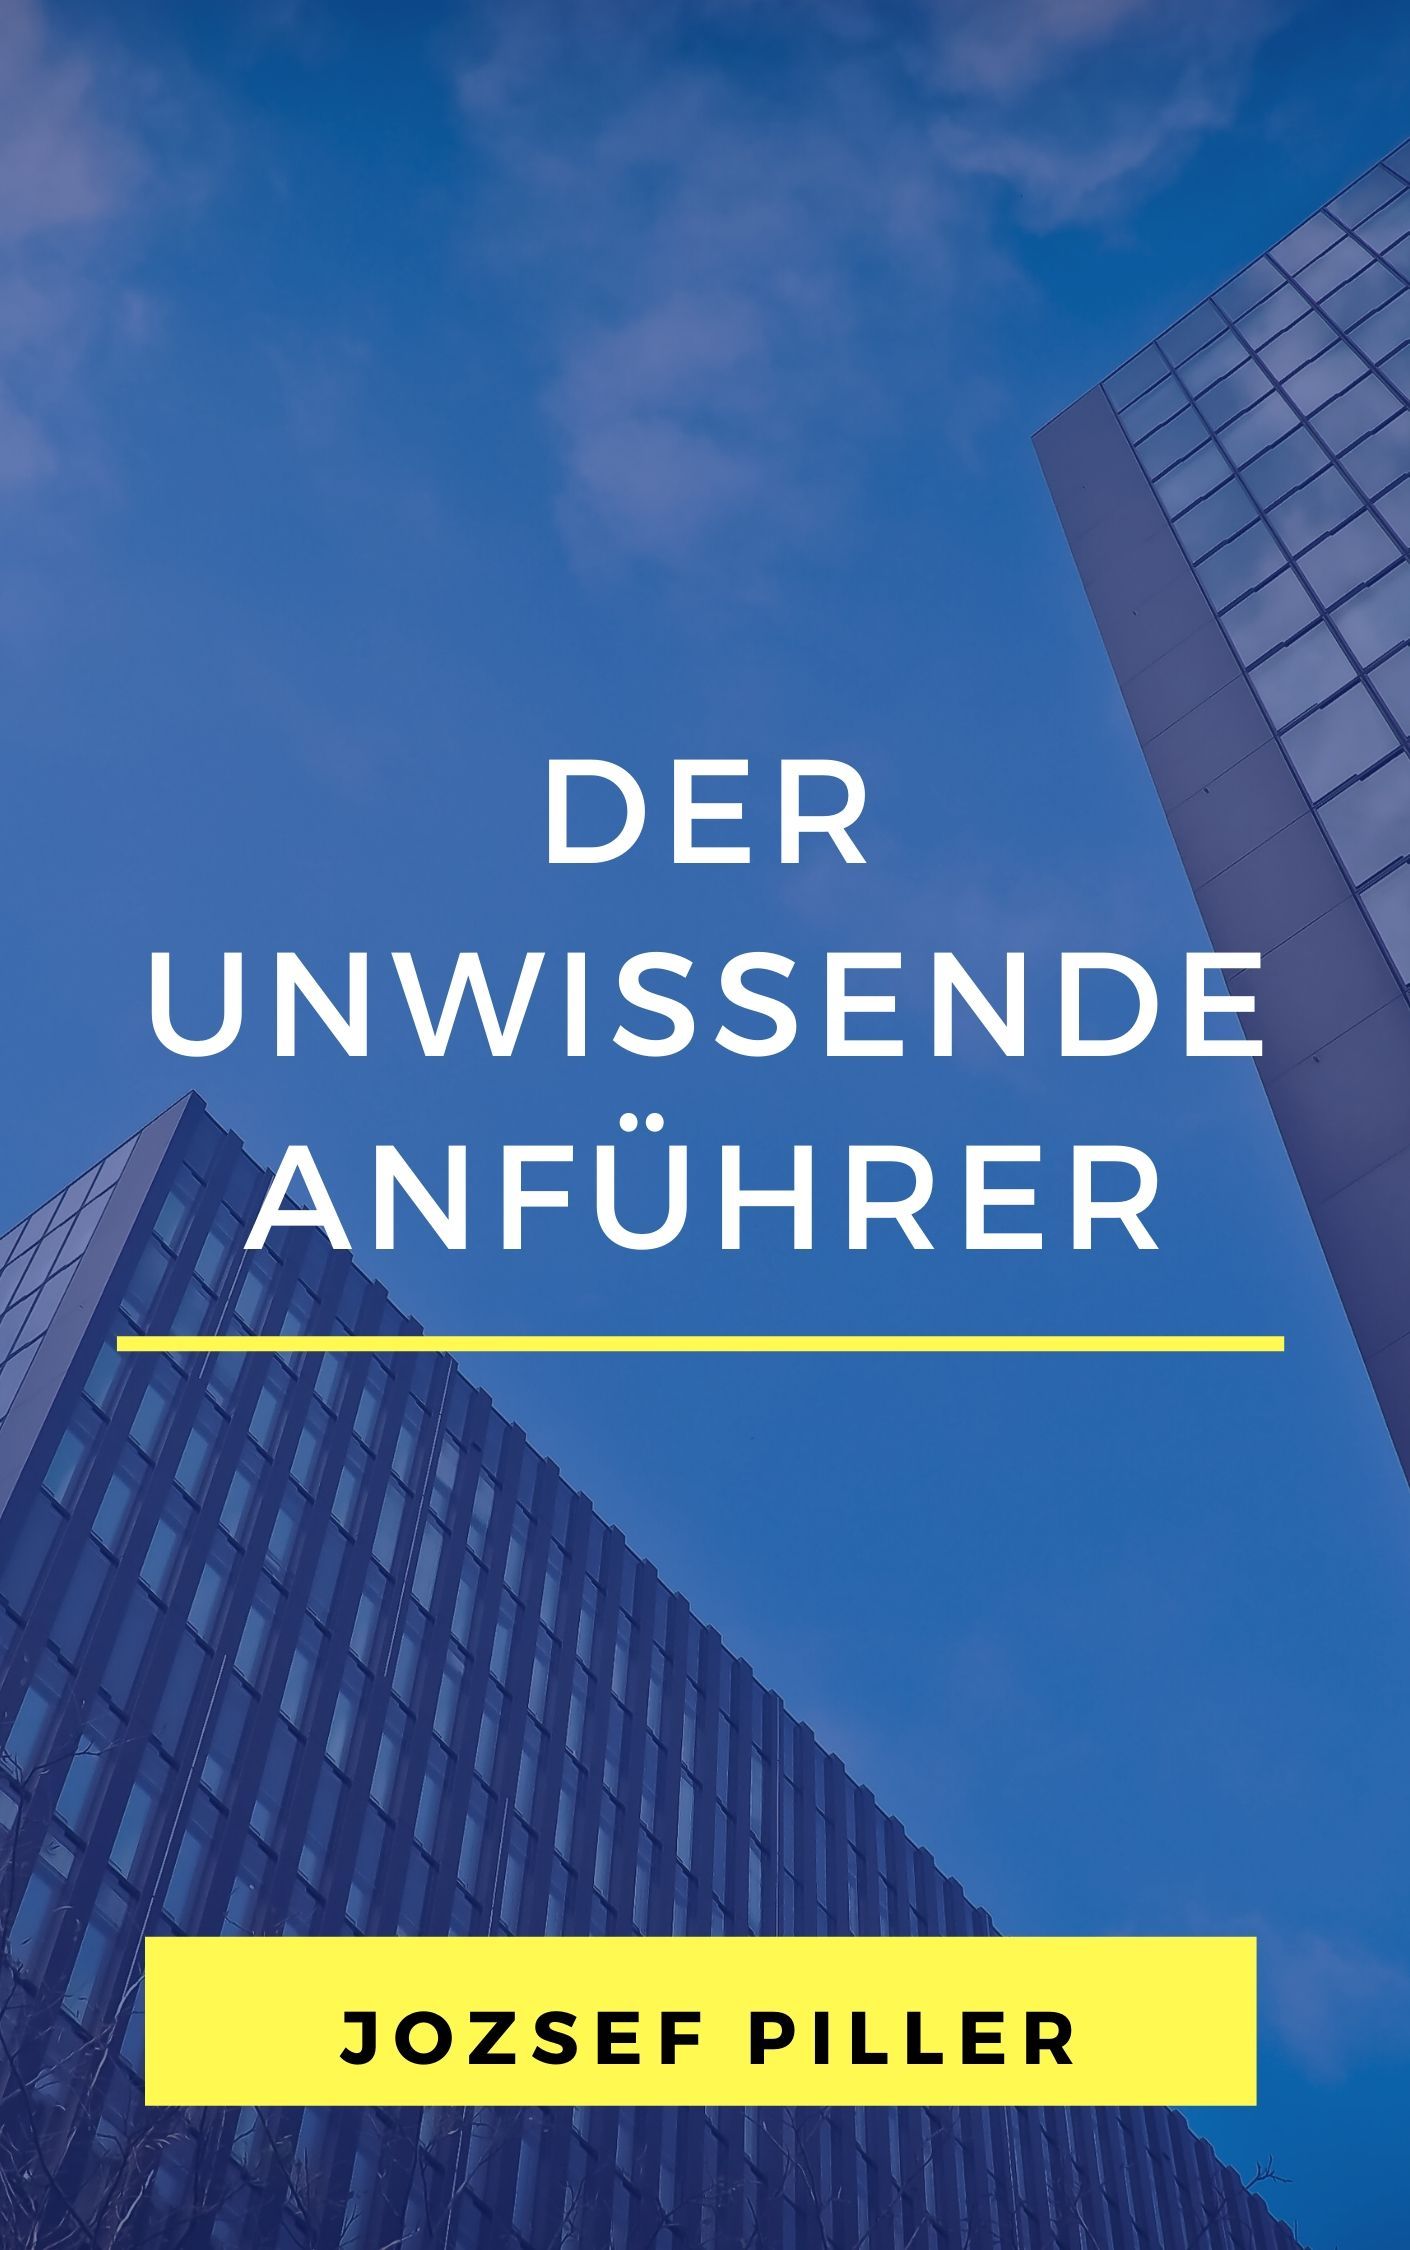 Der unwissende Anführer, eBook by Jozsef Piller